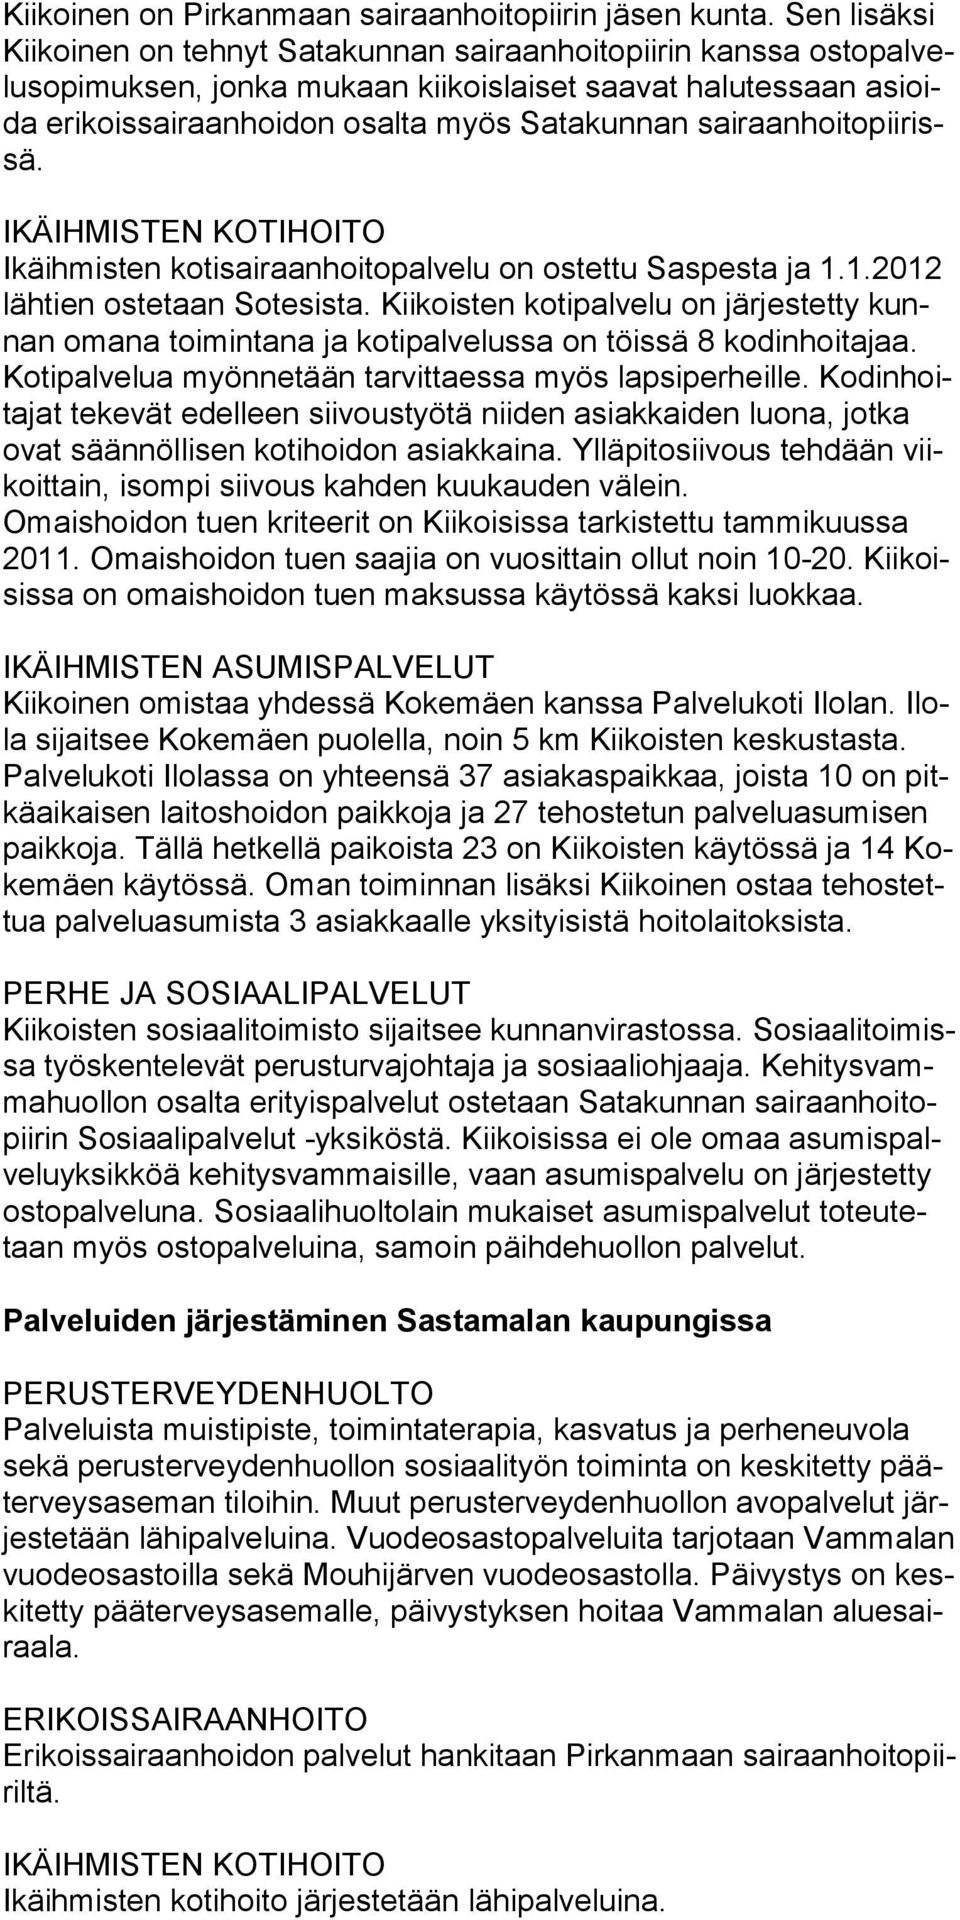 sairaanhoitopiirissä. IKÄIHMISTEN KOTIHOITO Ikäihmisten kotisairaanhoitopalvelu on ostettu Saspesta ja 1.1.2012 lähtien ostetaan Sotesista.